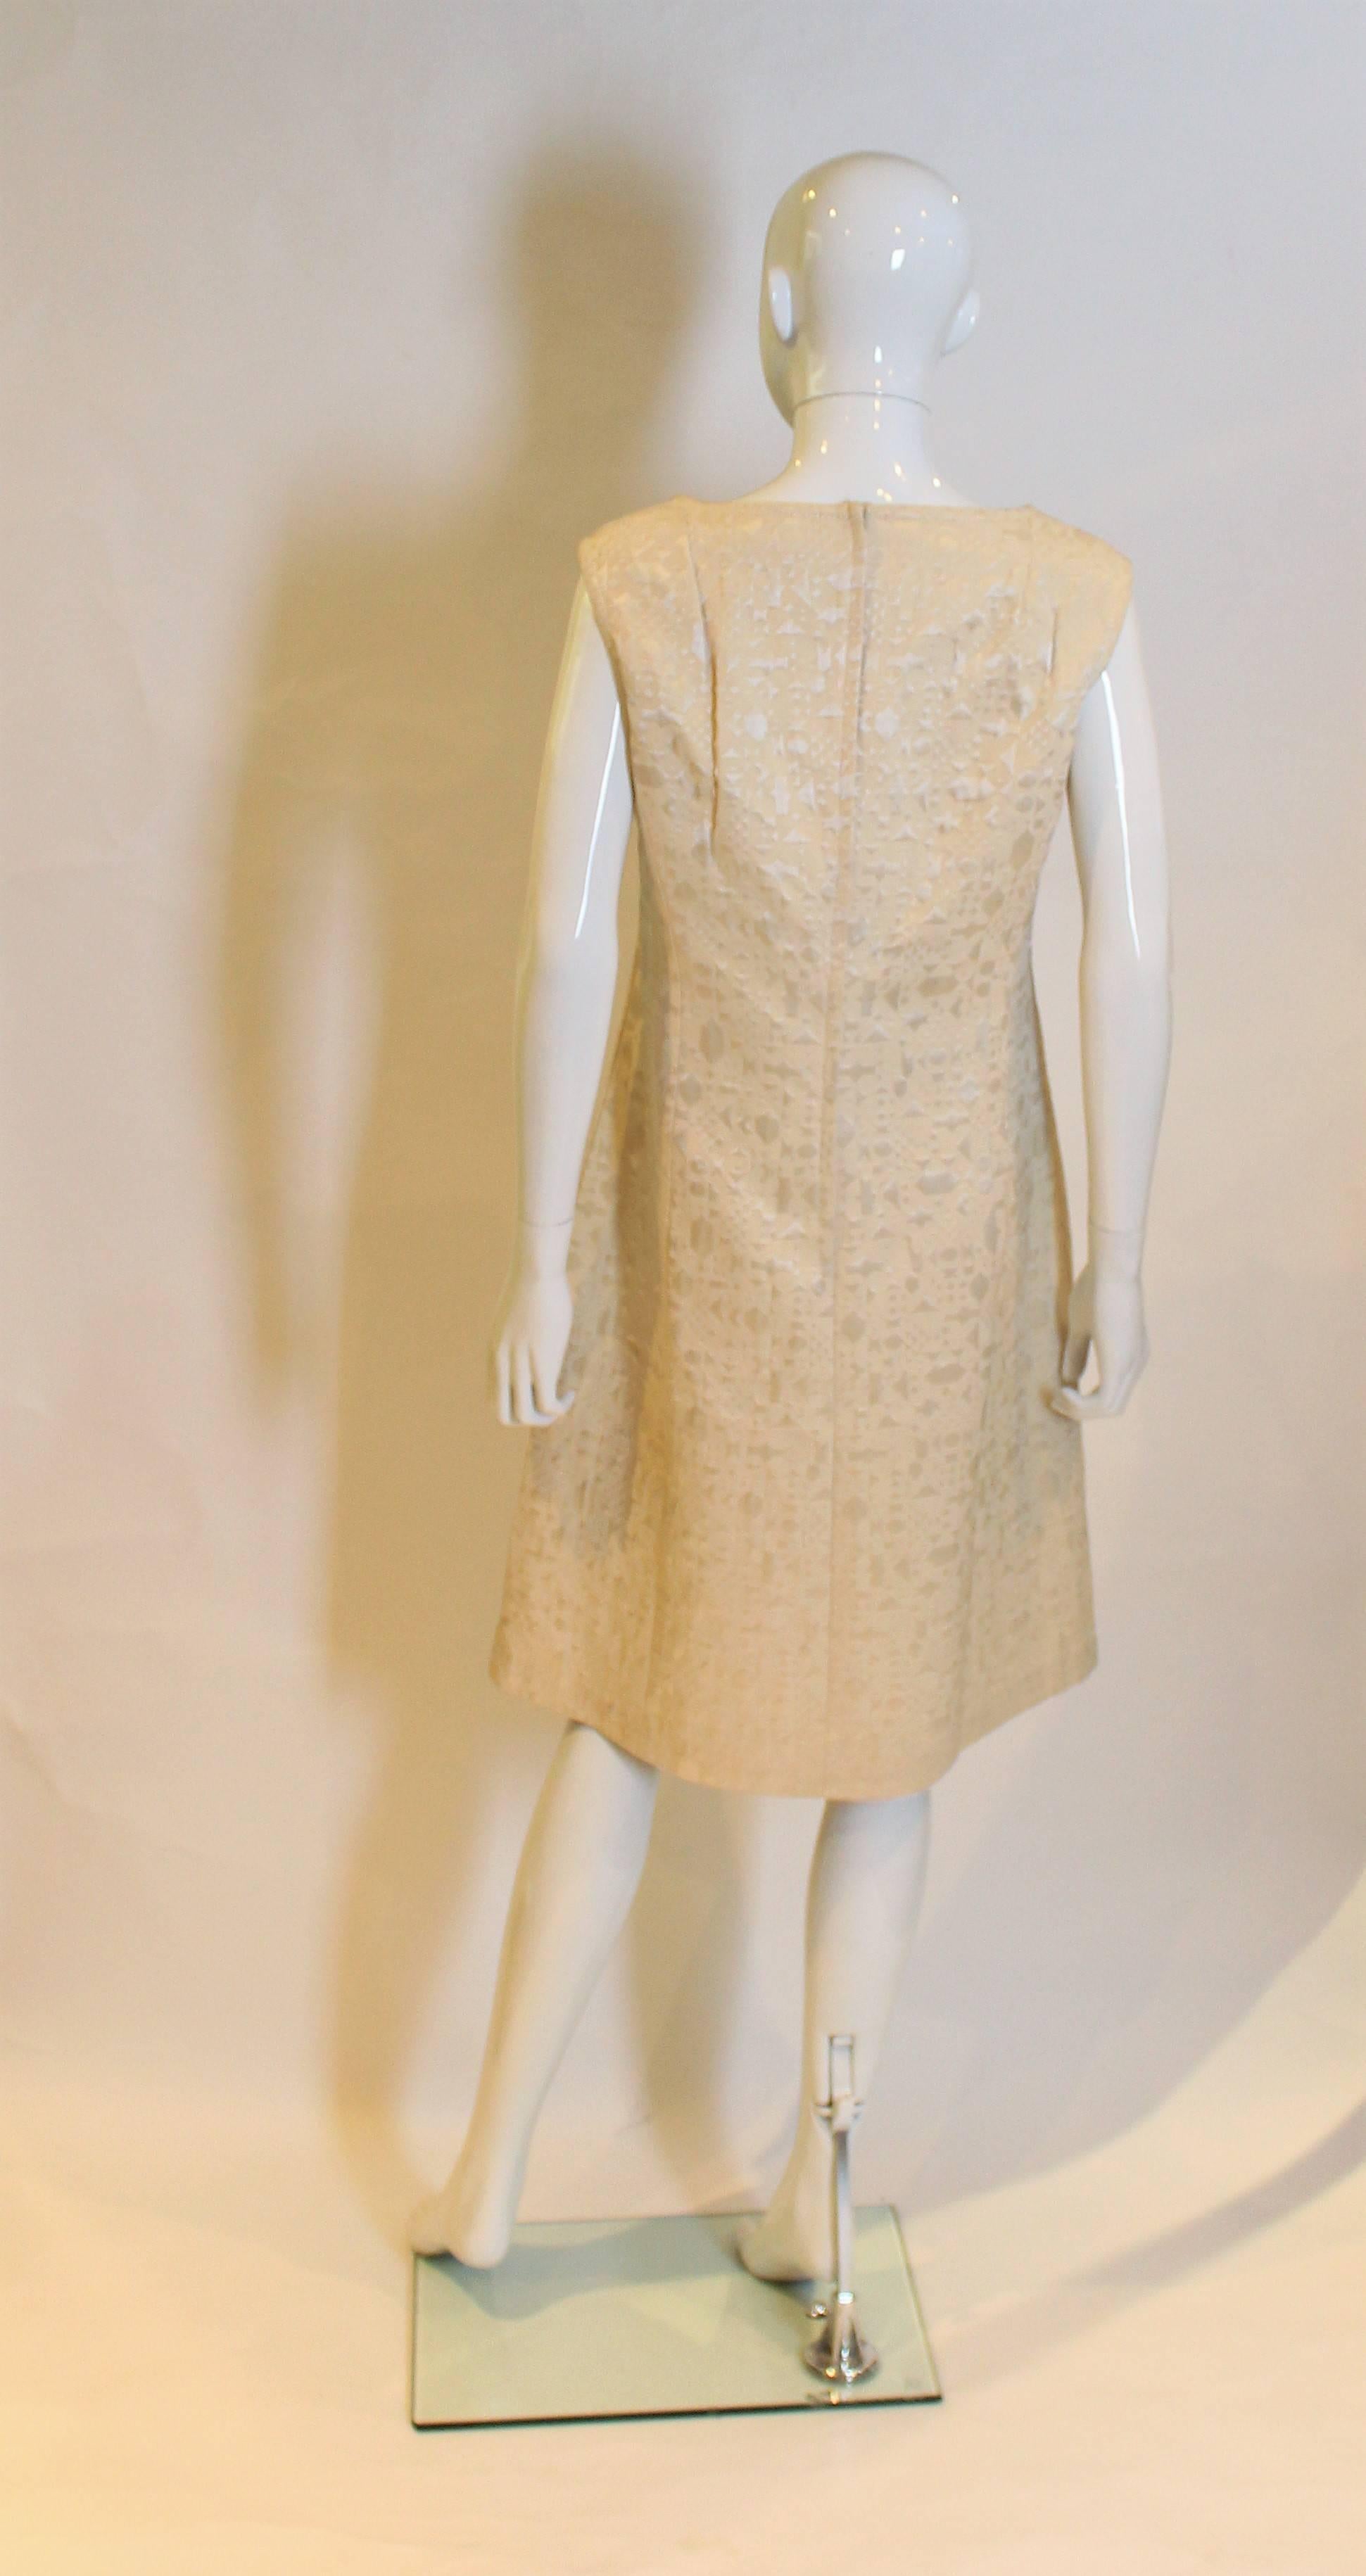 Women's 1960s Gold Brocade Shift Dress.